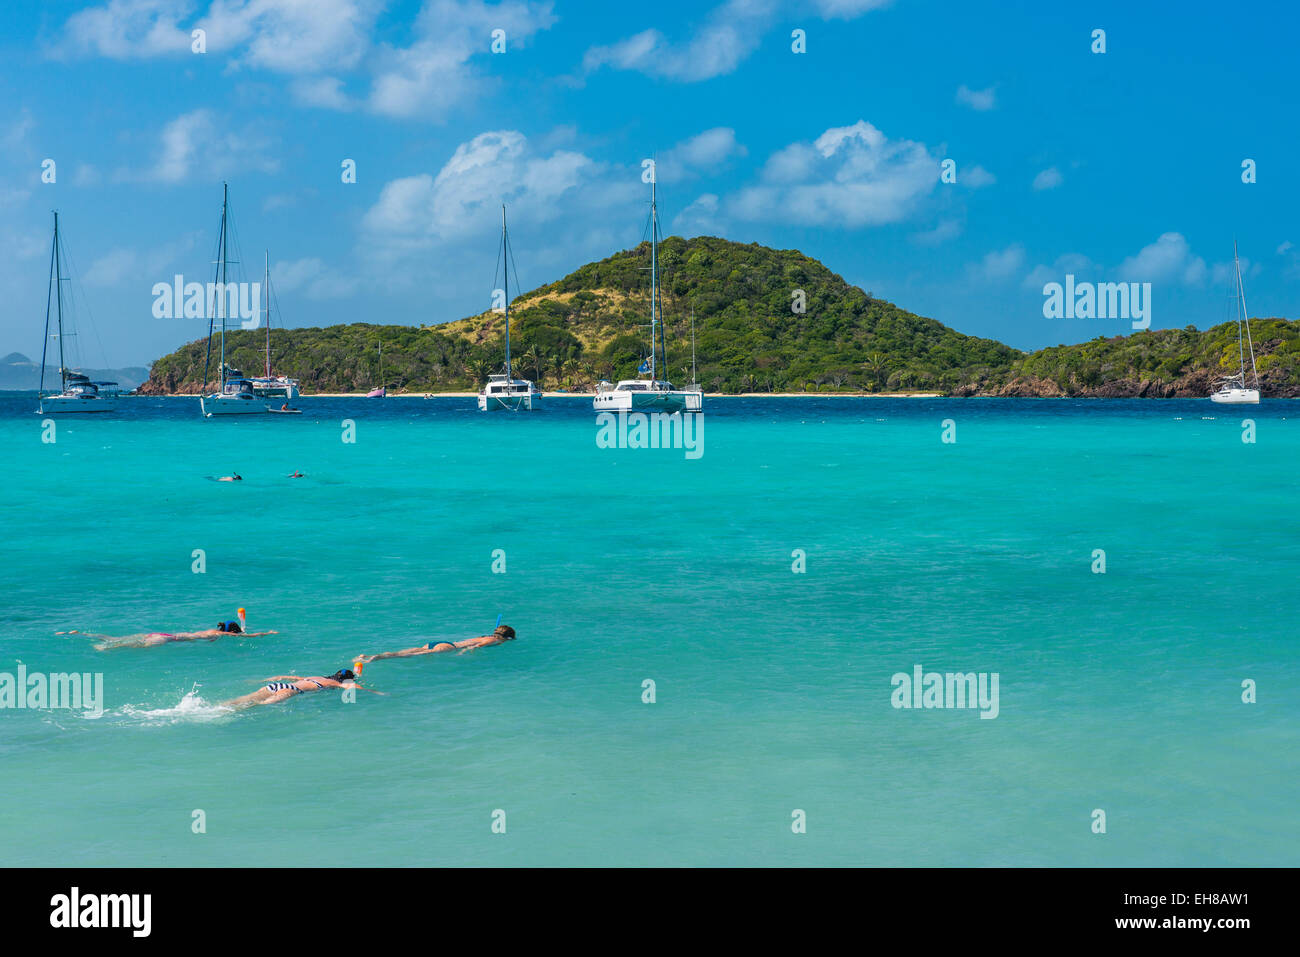 Los turistas el snorkeling en las aguas turquesas de Tobago Cays, Las Granadinas, las Islas de Barlovento, Antillas, Caribe Foto de stock